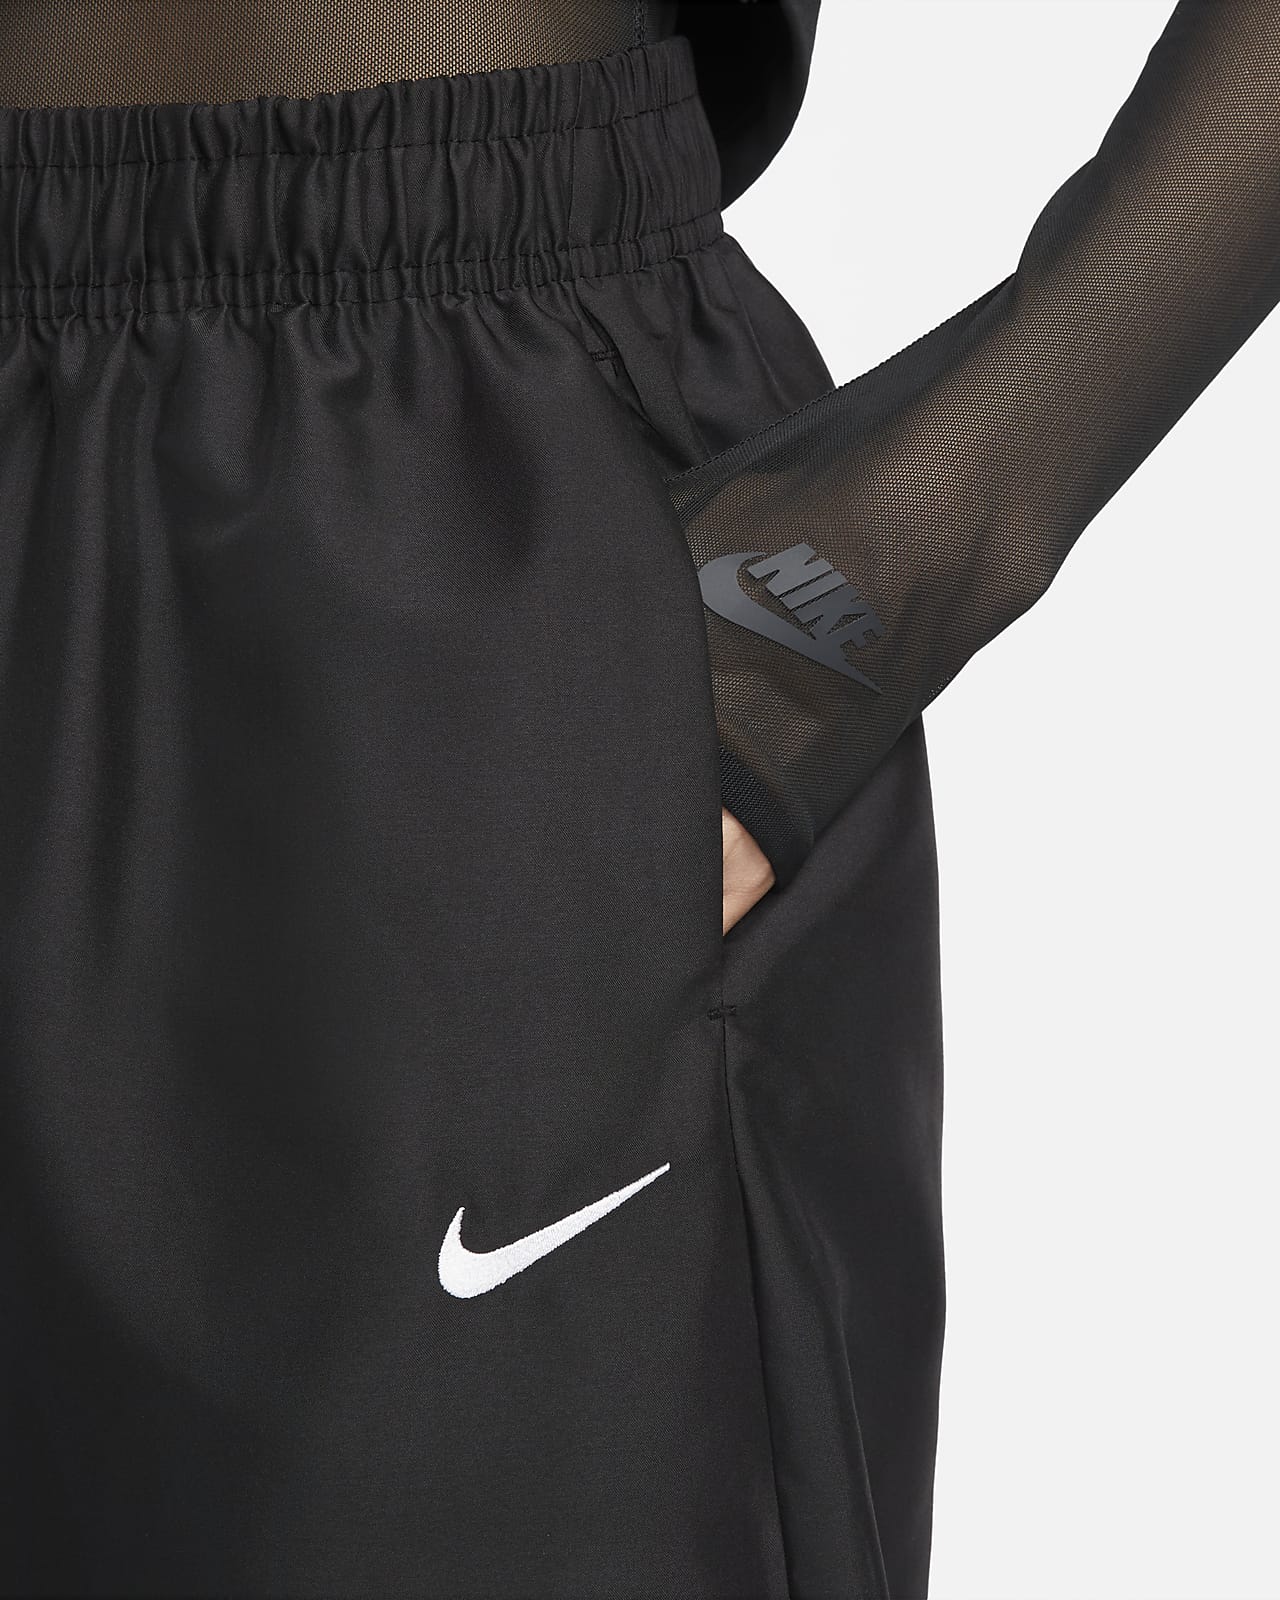 Nike Sportswear Women's Woven Joggers. Nike LU